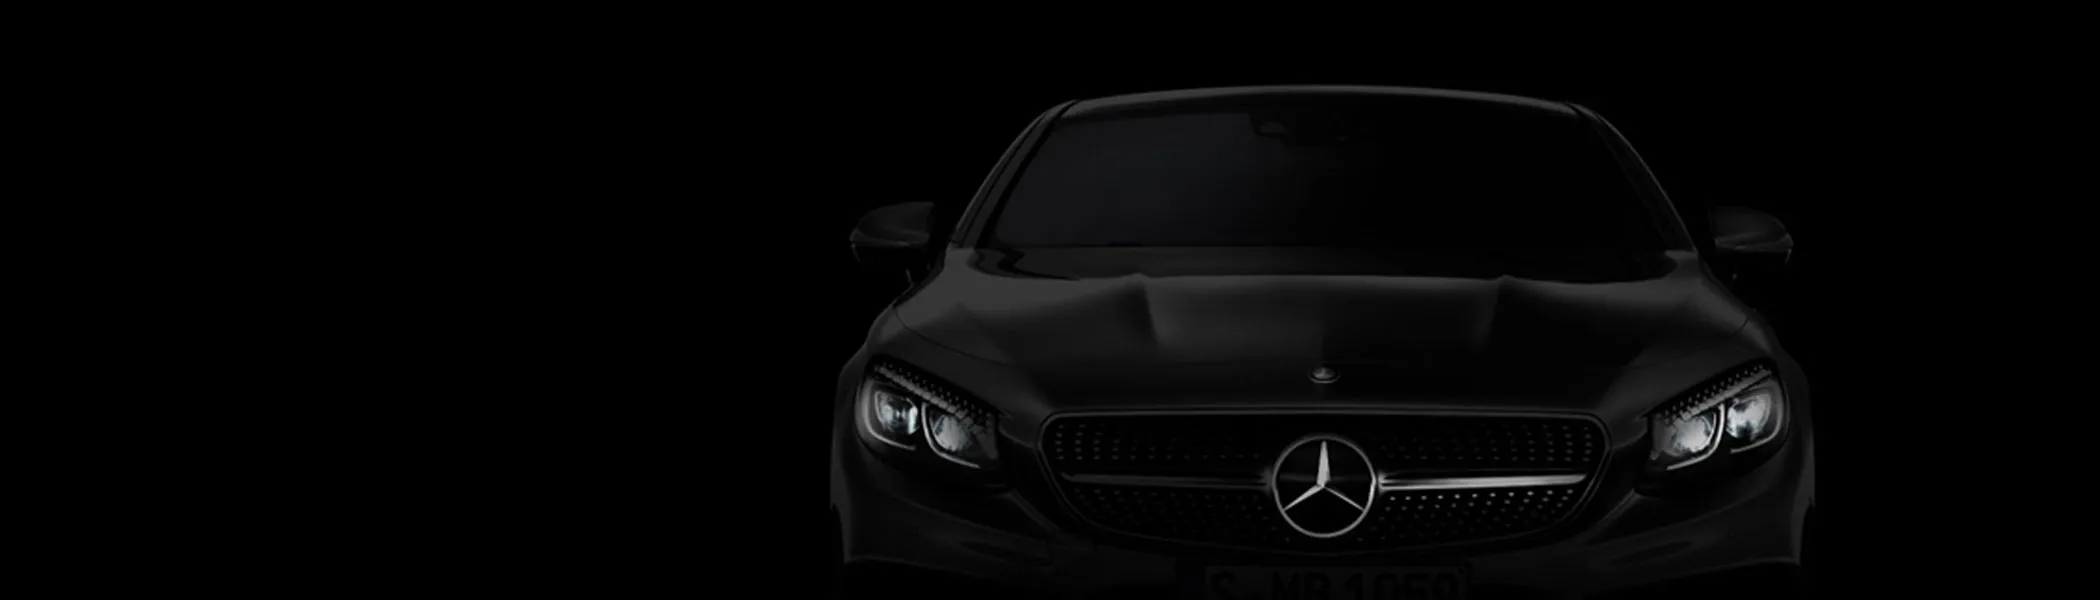 Future Vehicles Mercedes Benz Usa - mercedes new models 2020